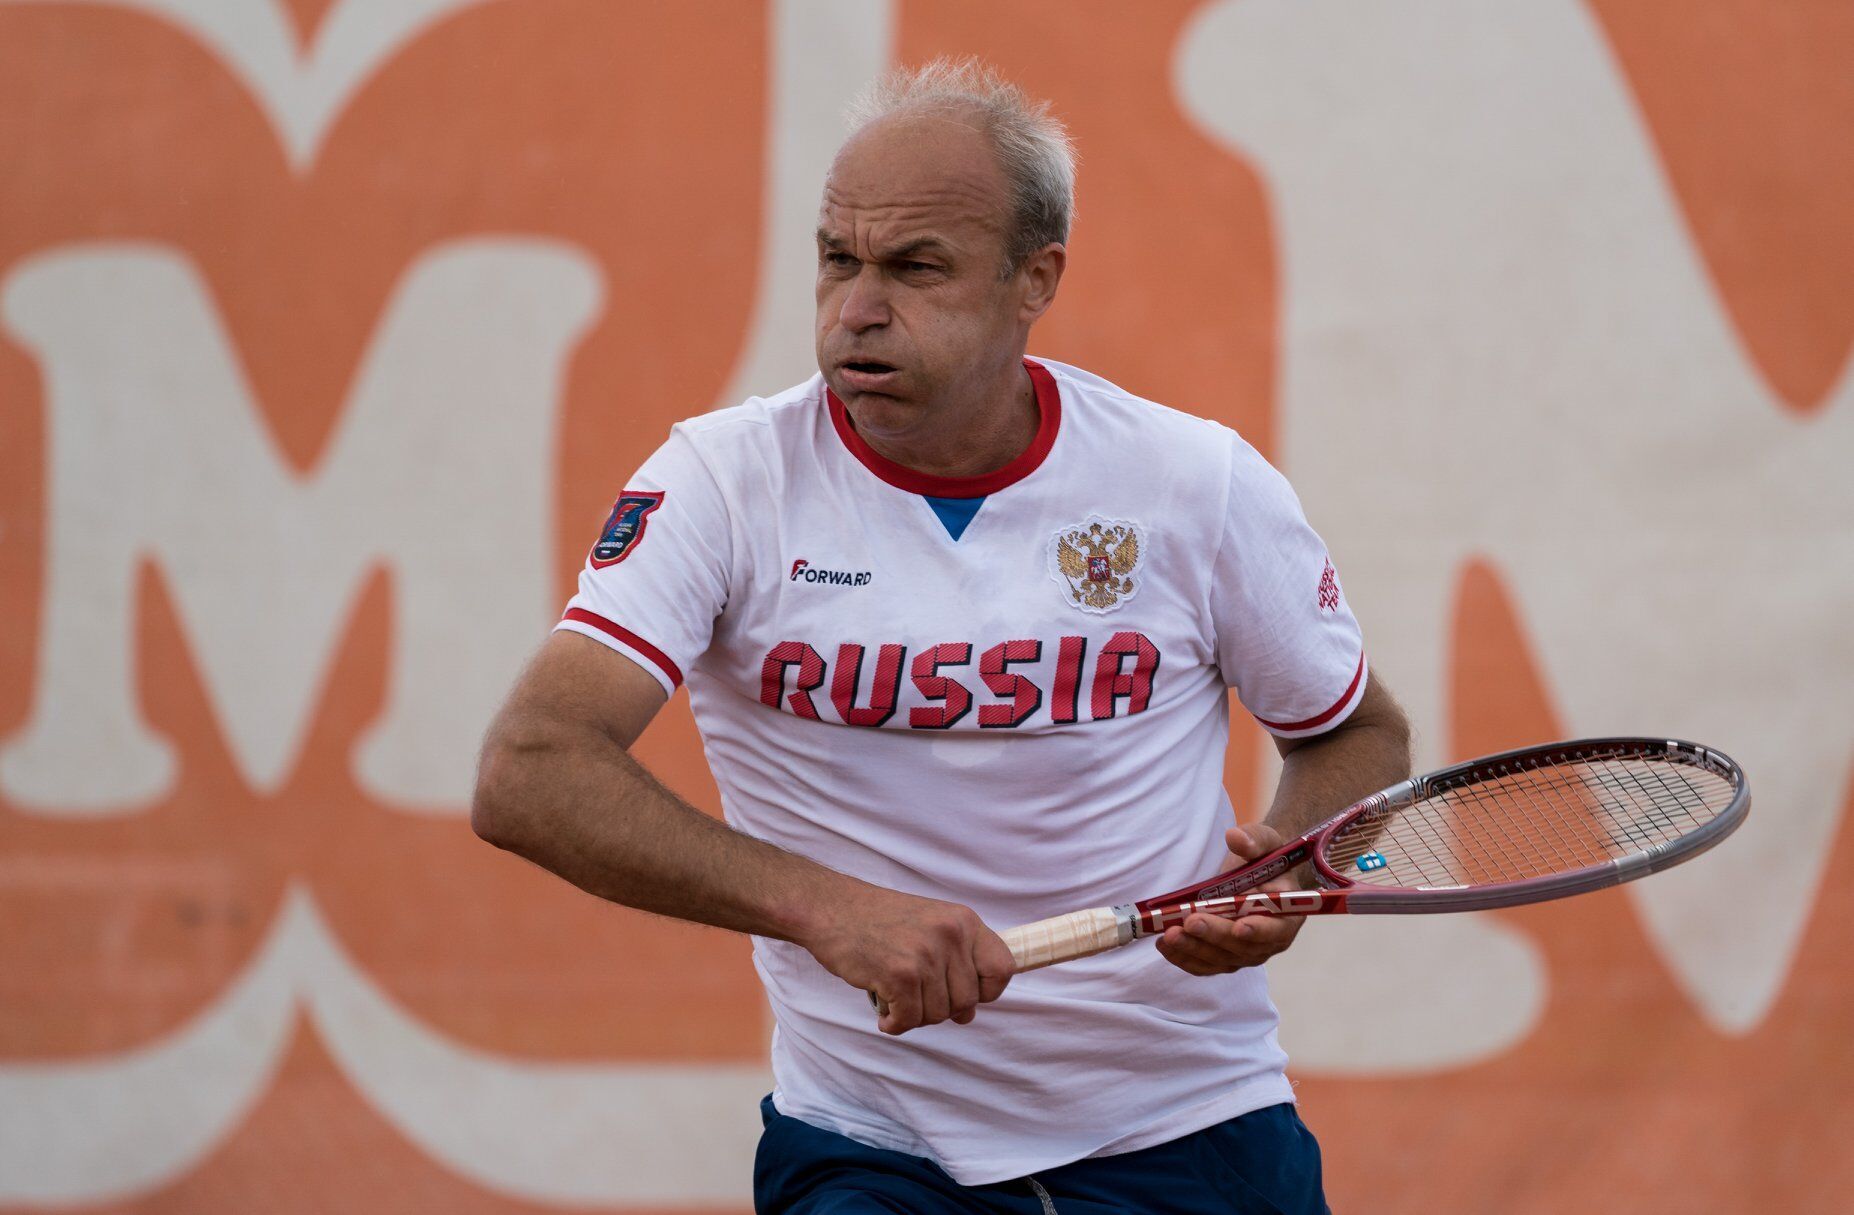 "Ввести меры за эти выходки": в РФ в истерике призвали отстранить украинских теннисисток, поставивших на место агрессоров